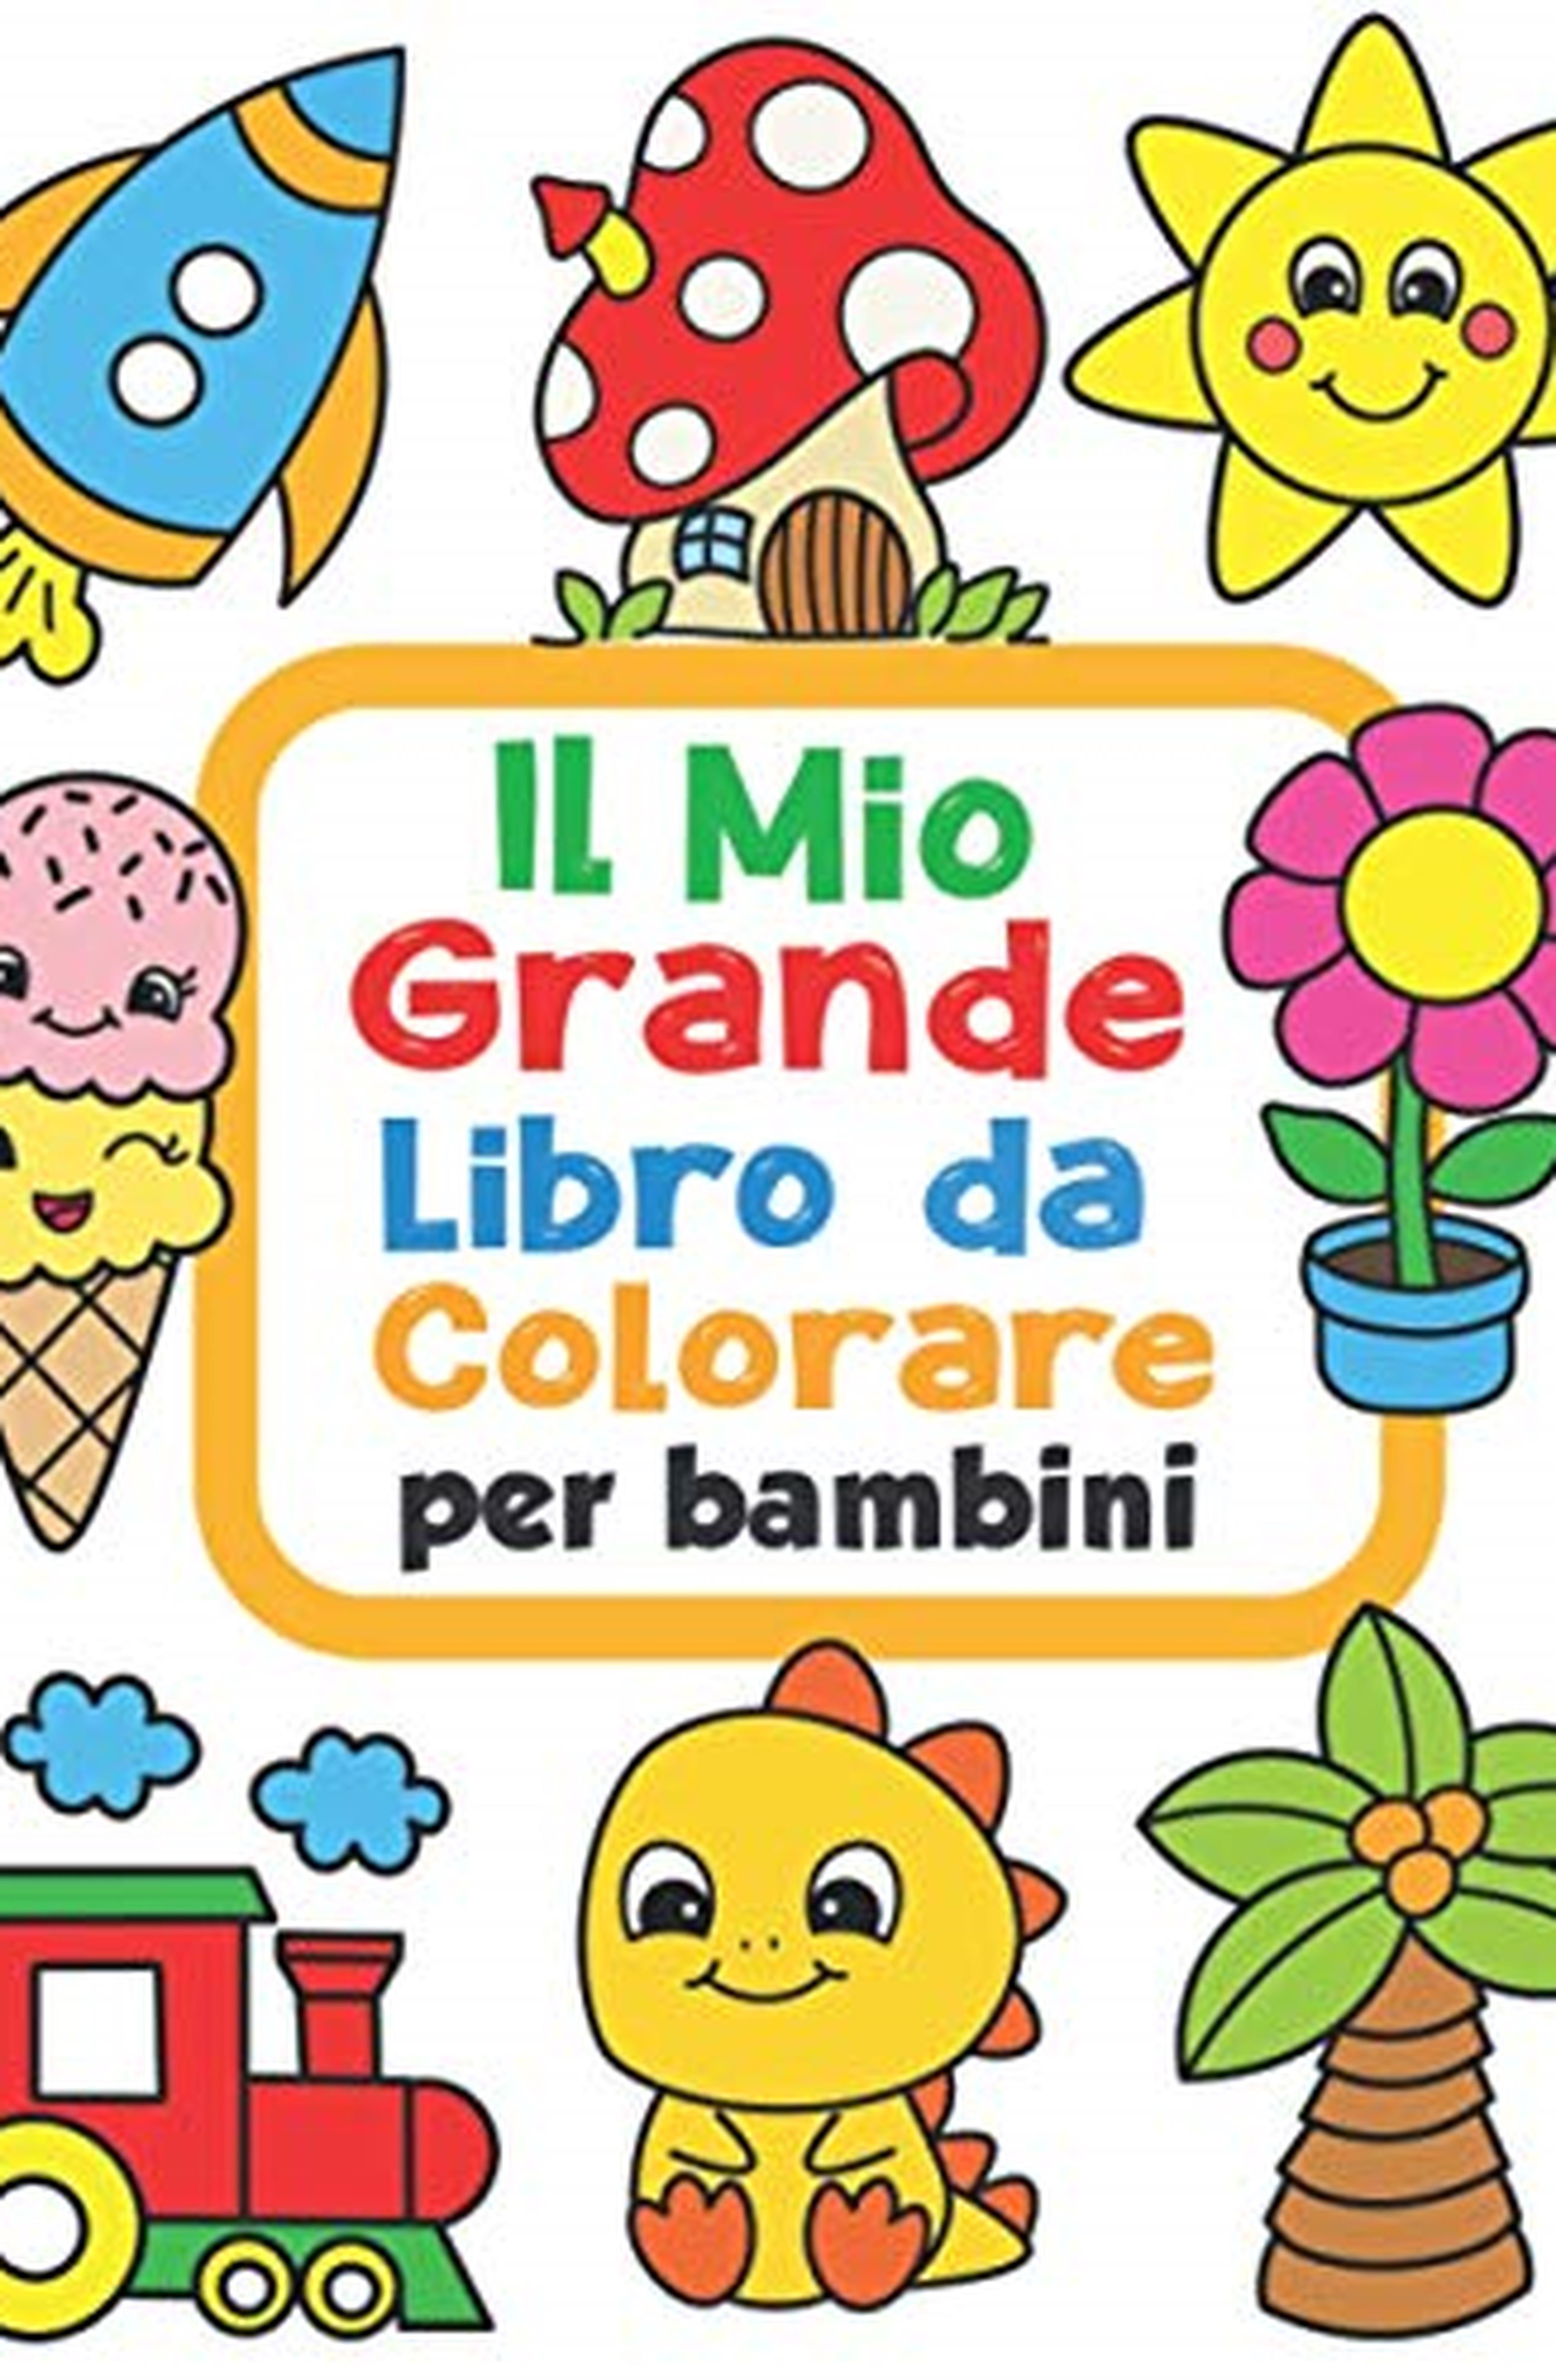 Il Mio Grande Libro da Colorare per Bambini: 100 Divertenti disegni con immagini facili da colorare per bambini da 1 a 4 anni